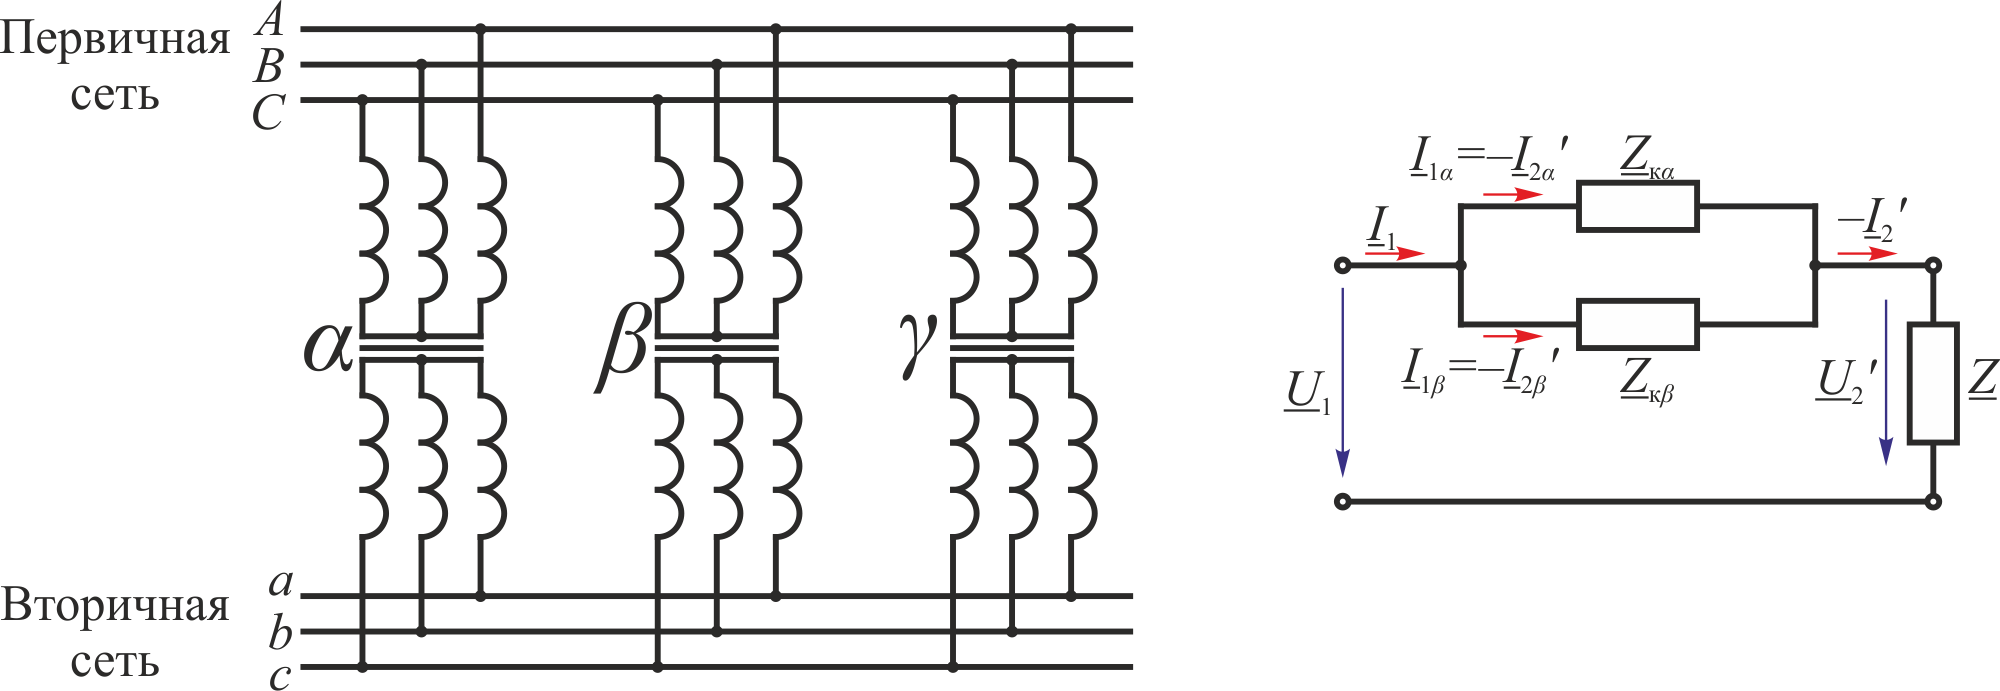 Трансформаторы последовательно. Параллельное соединение вторичных обмоток трансформатора. Схема параллельного включения однофазного трансформатора. Параллельное включение первичных обмоток трансформатора. Схема параллельного подключения трансформаторов.